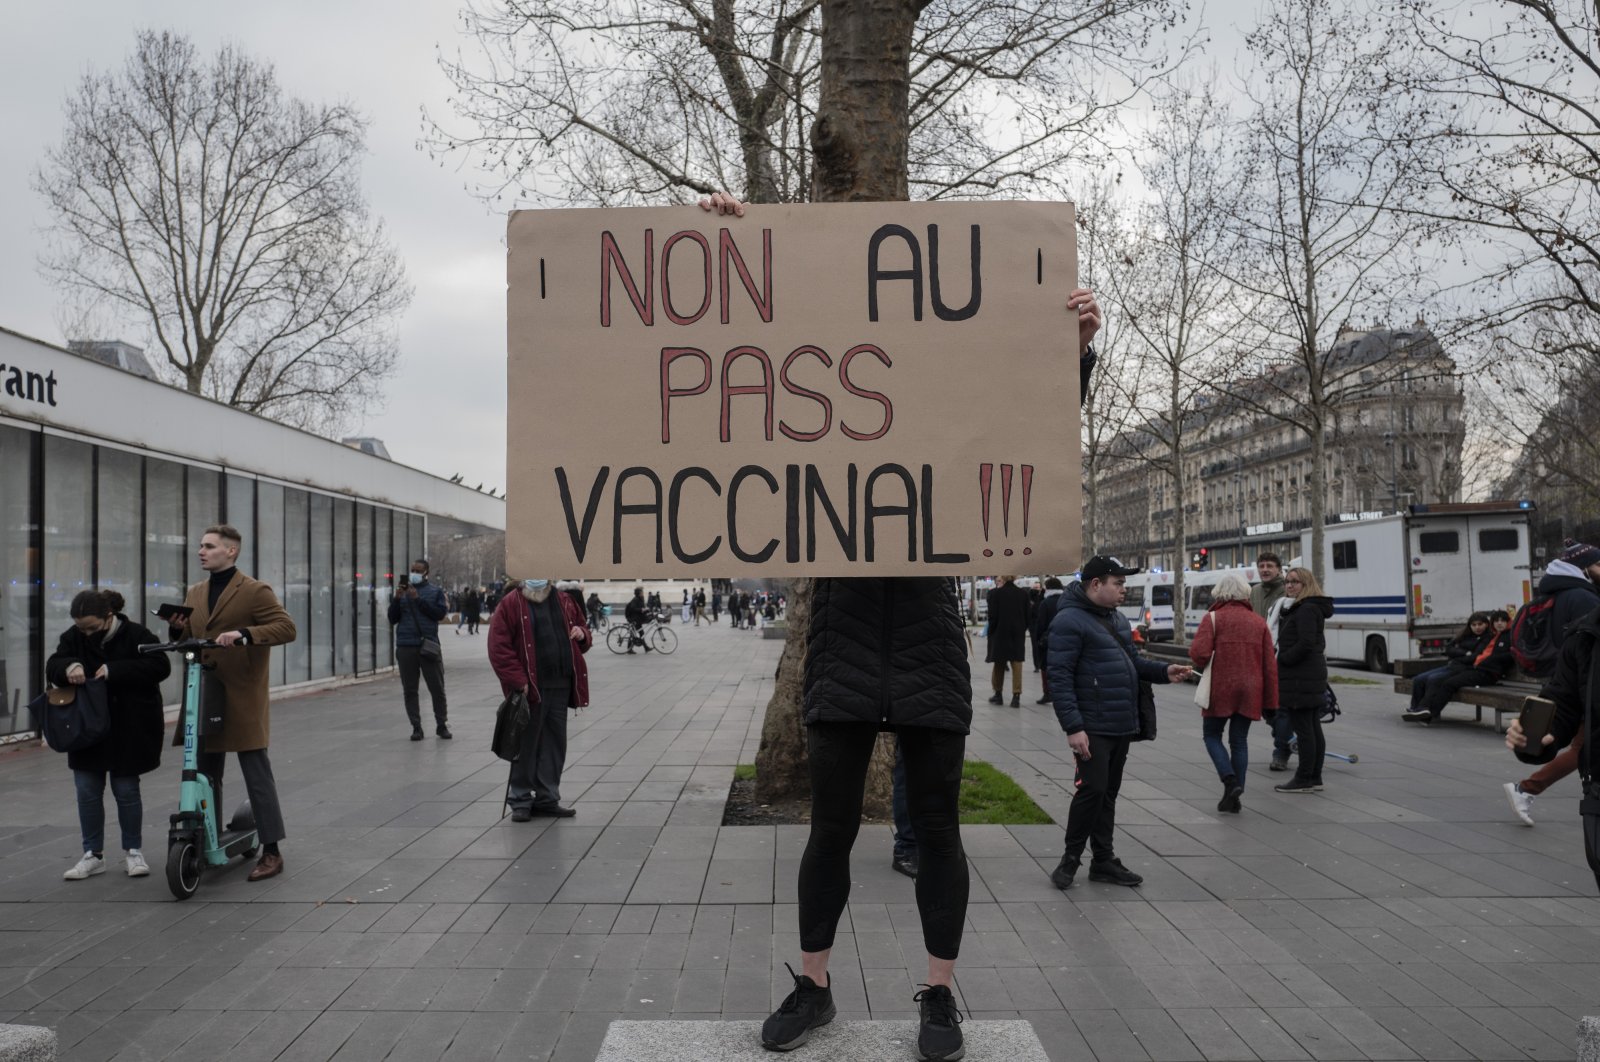 Prancis memberlakukan ‘vaksin pass’ untuk liburan dan perjalanan